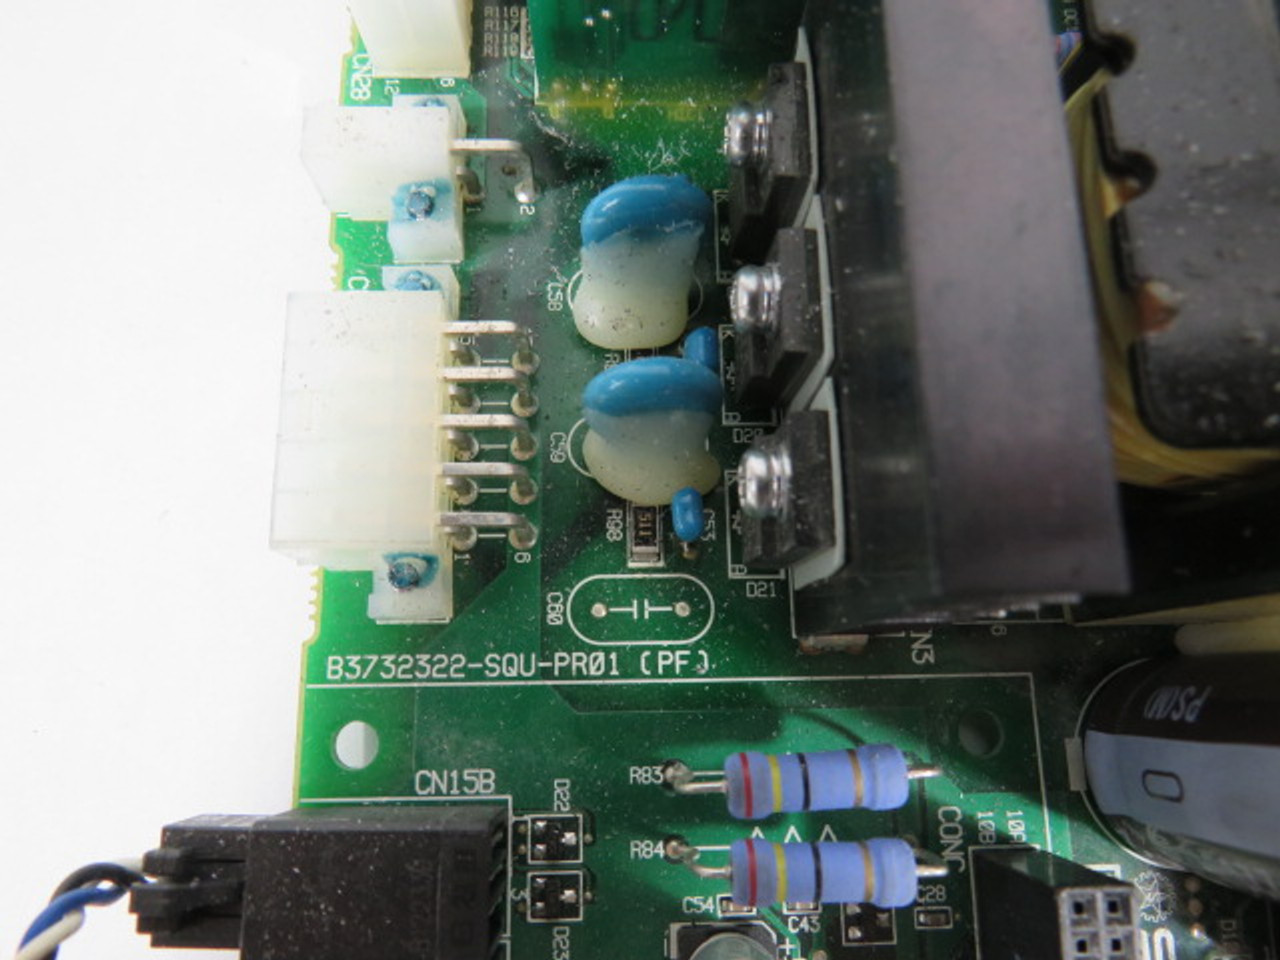 Star Seiki PI480A Robotic Power Supply Board SIOF88 B3732322-SQU-PR01 USED